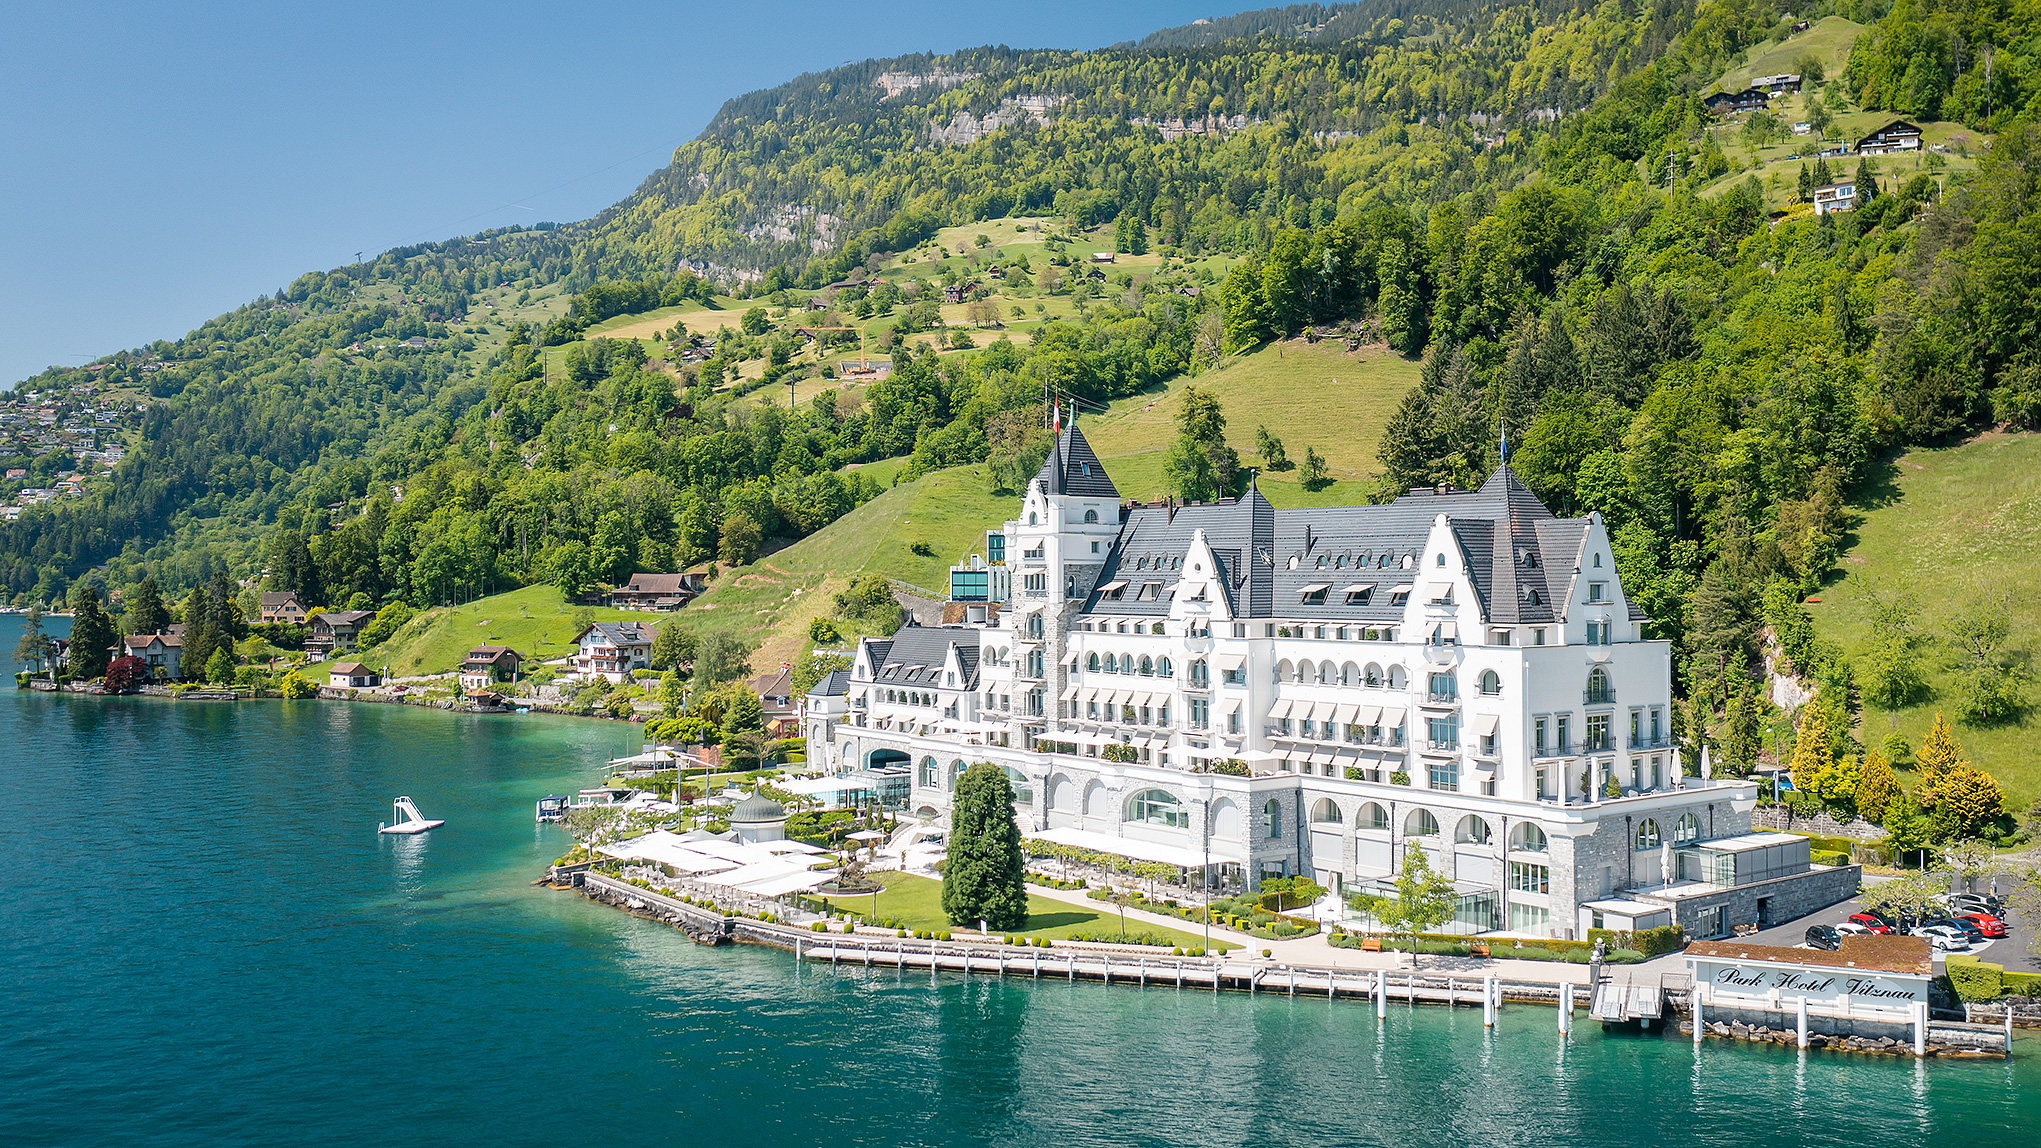 The fairytale castle belle époque building on Lake Lucerne